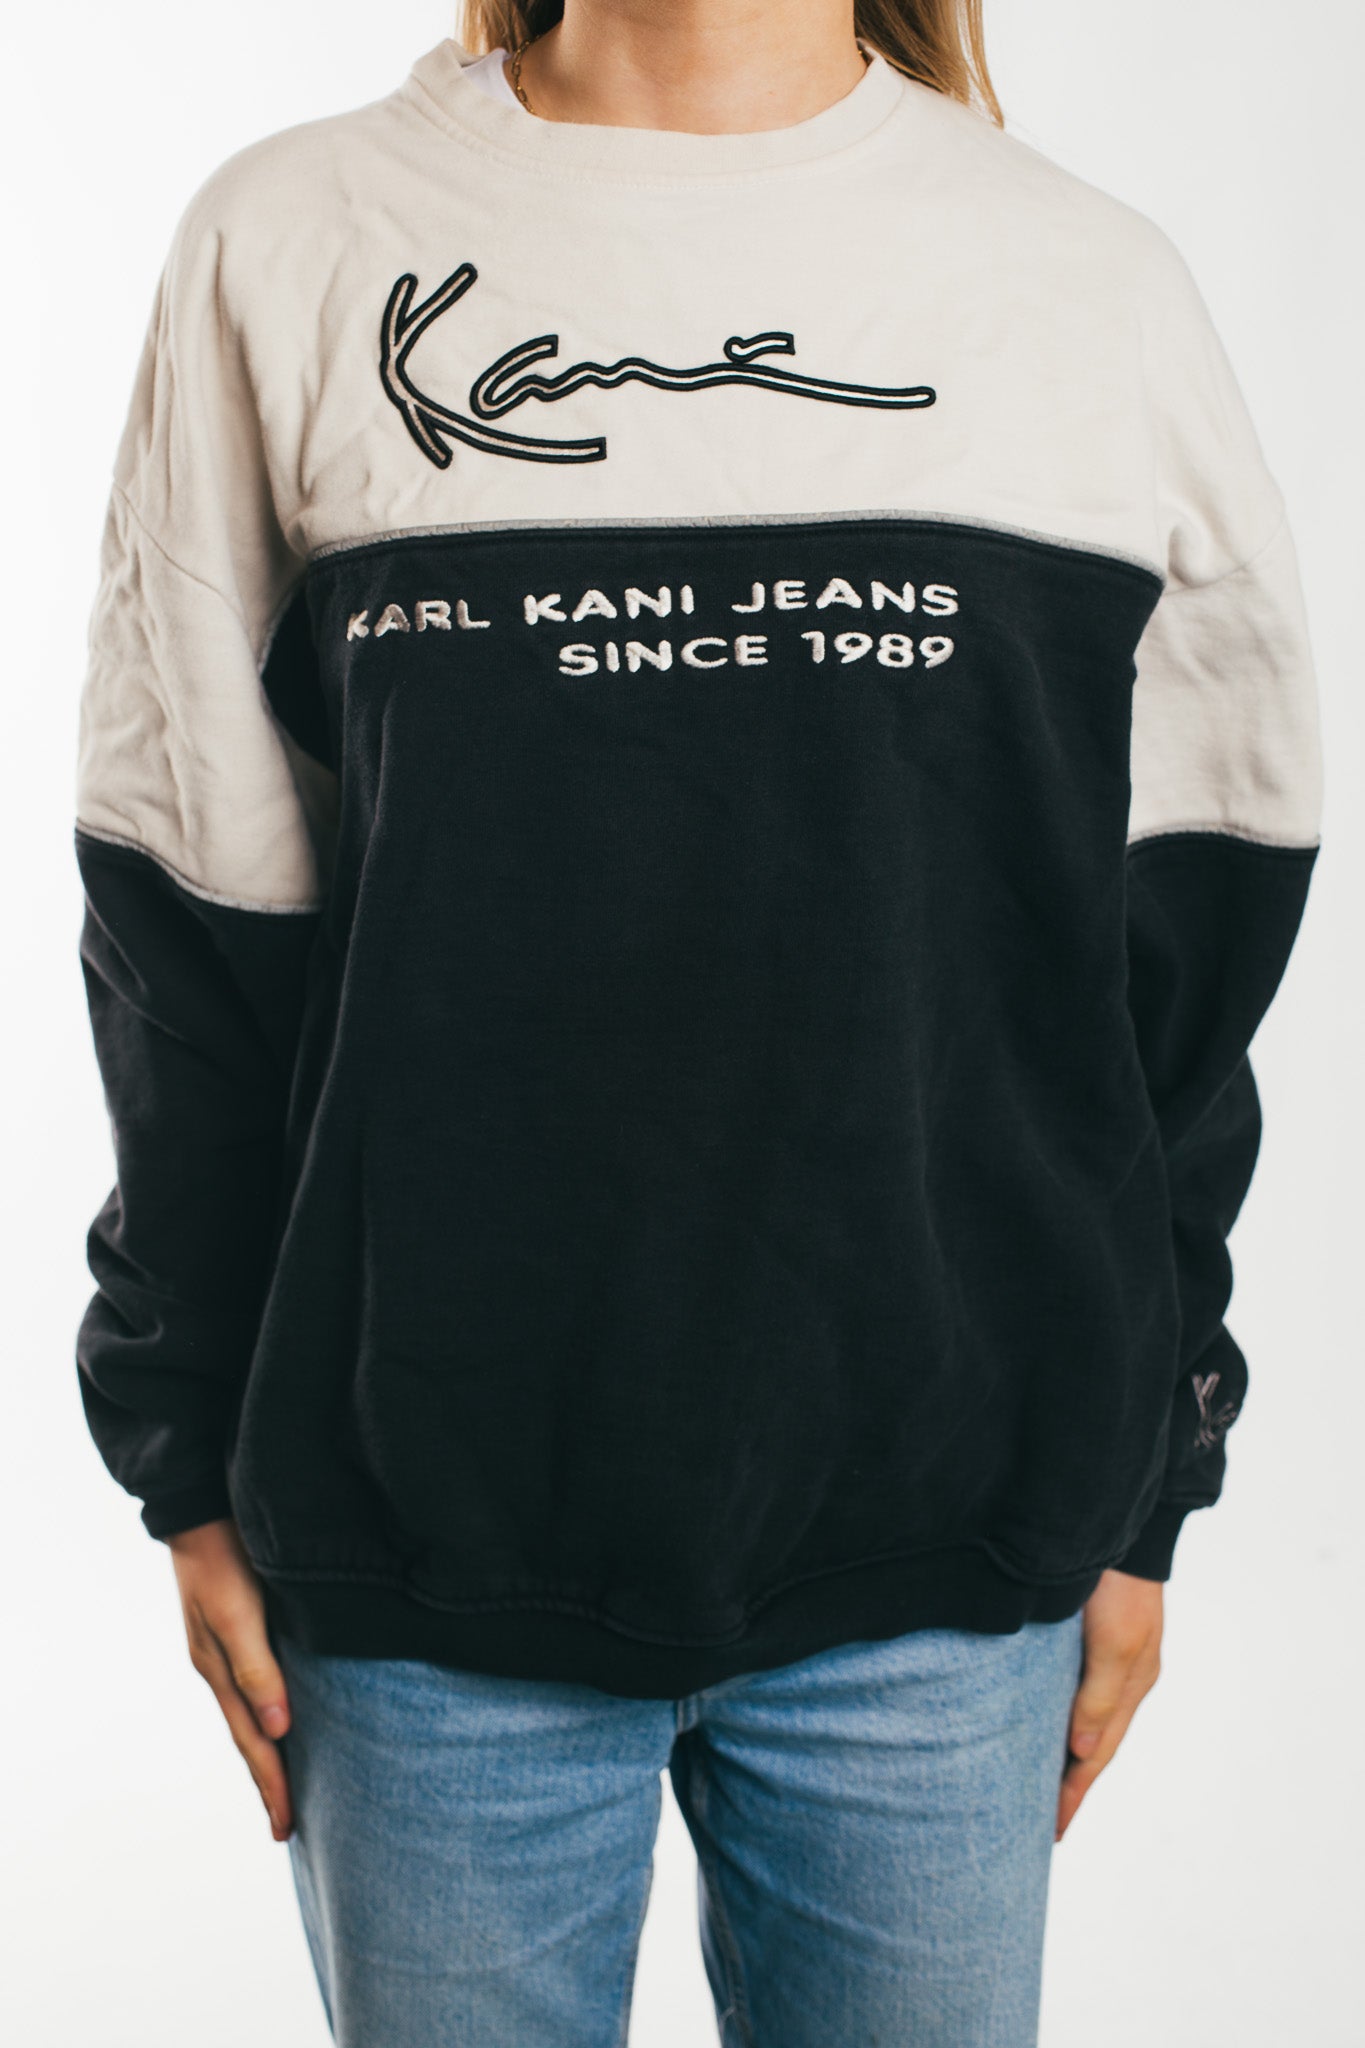 Karl Kani jeans - Sweatshirt (M)